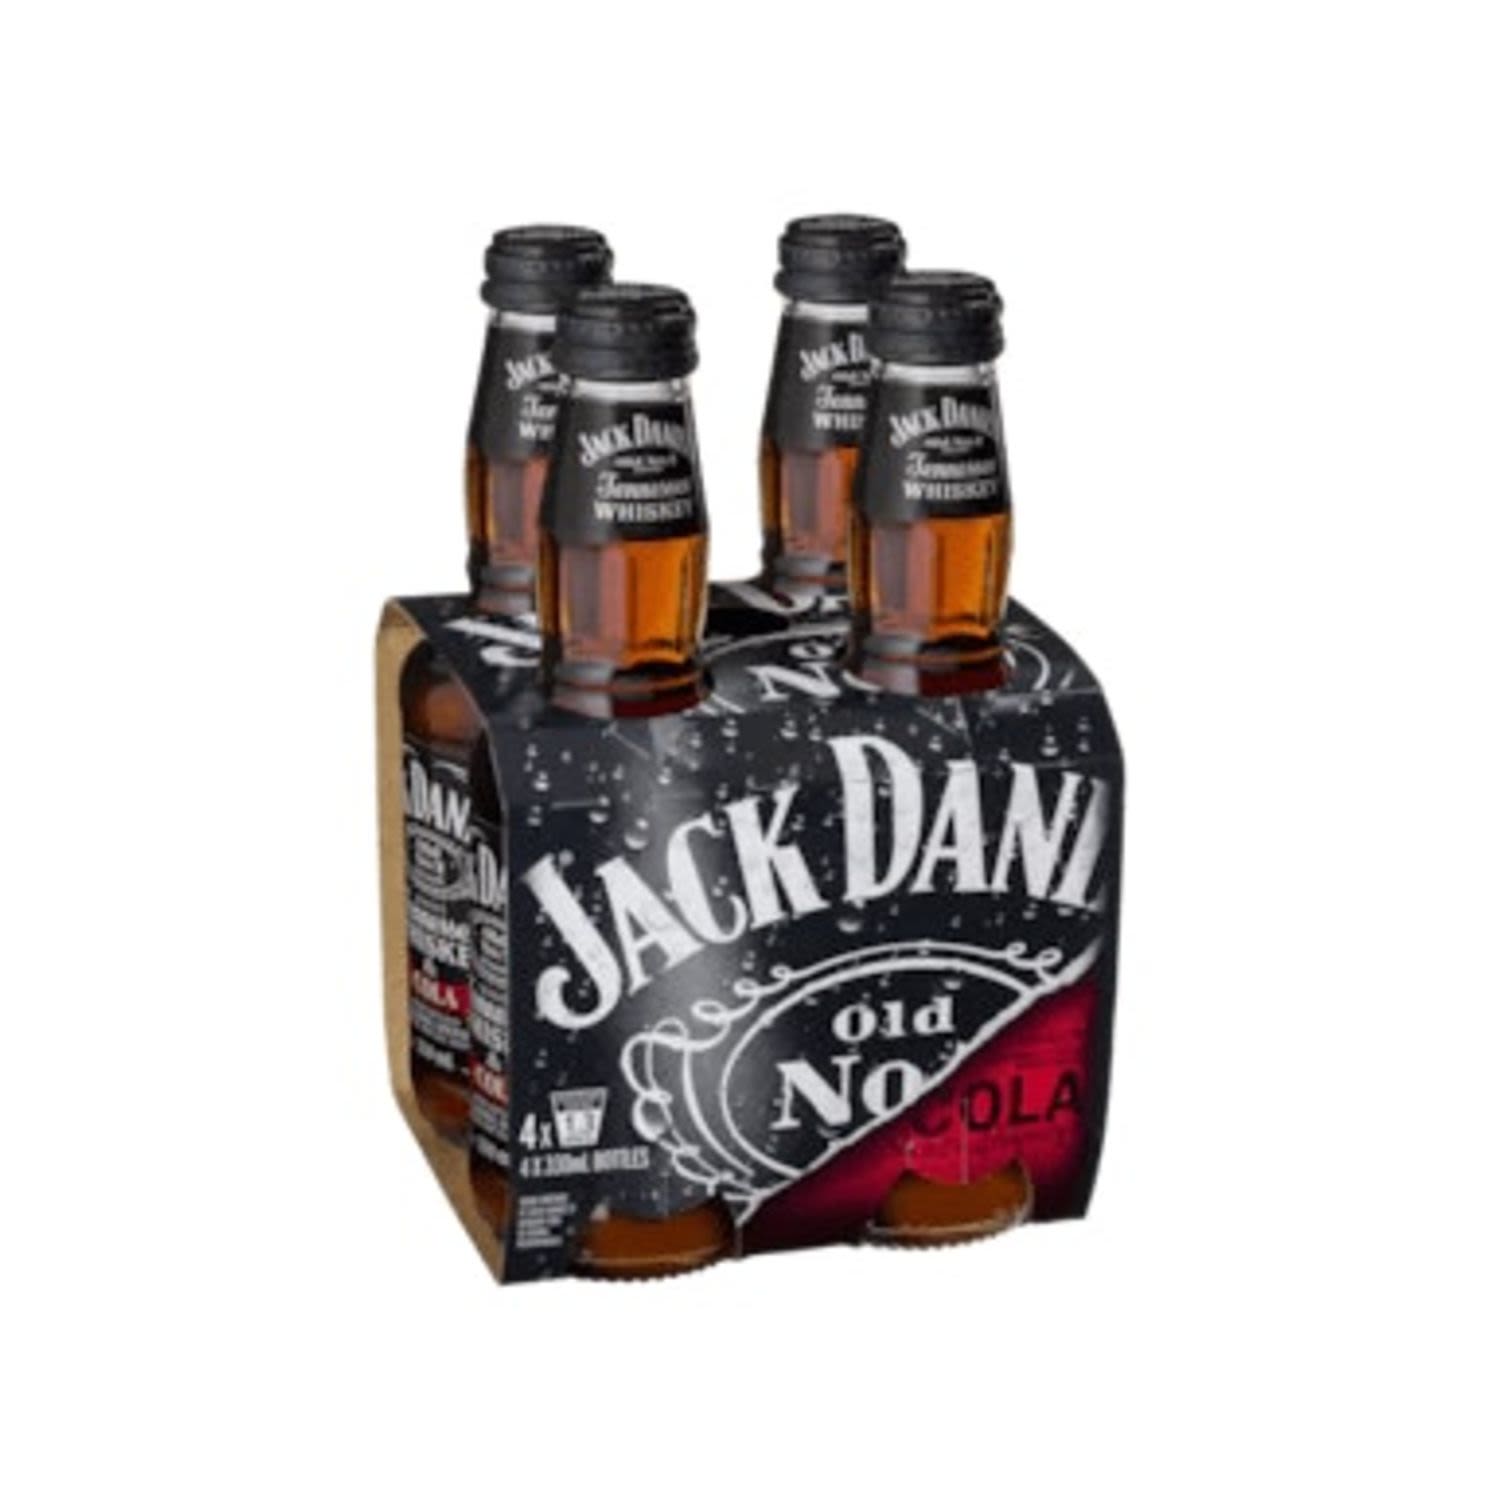 Jack Daniel's & Cola Bottle 330mL<br /> <br />Alcohol Volume: 4.80%<br /><br />Pack Format: 4 Pack<br /><br />Standard Drinks: 1.2</br /><br />Pack Type: Bottle<br />